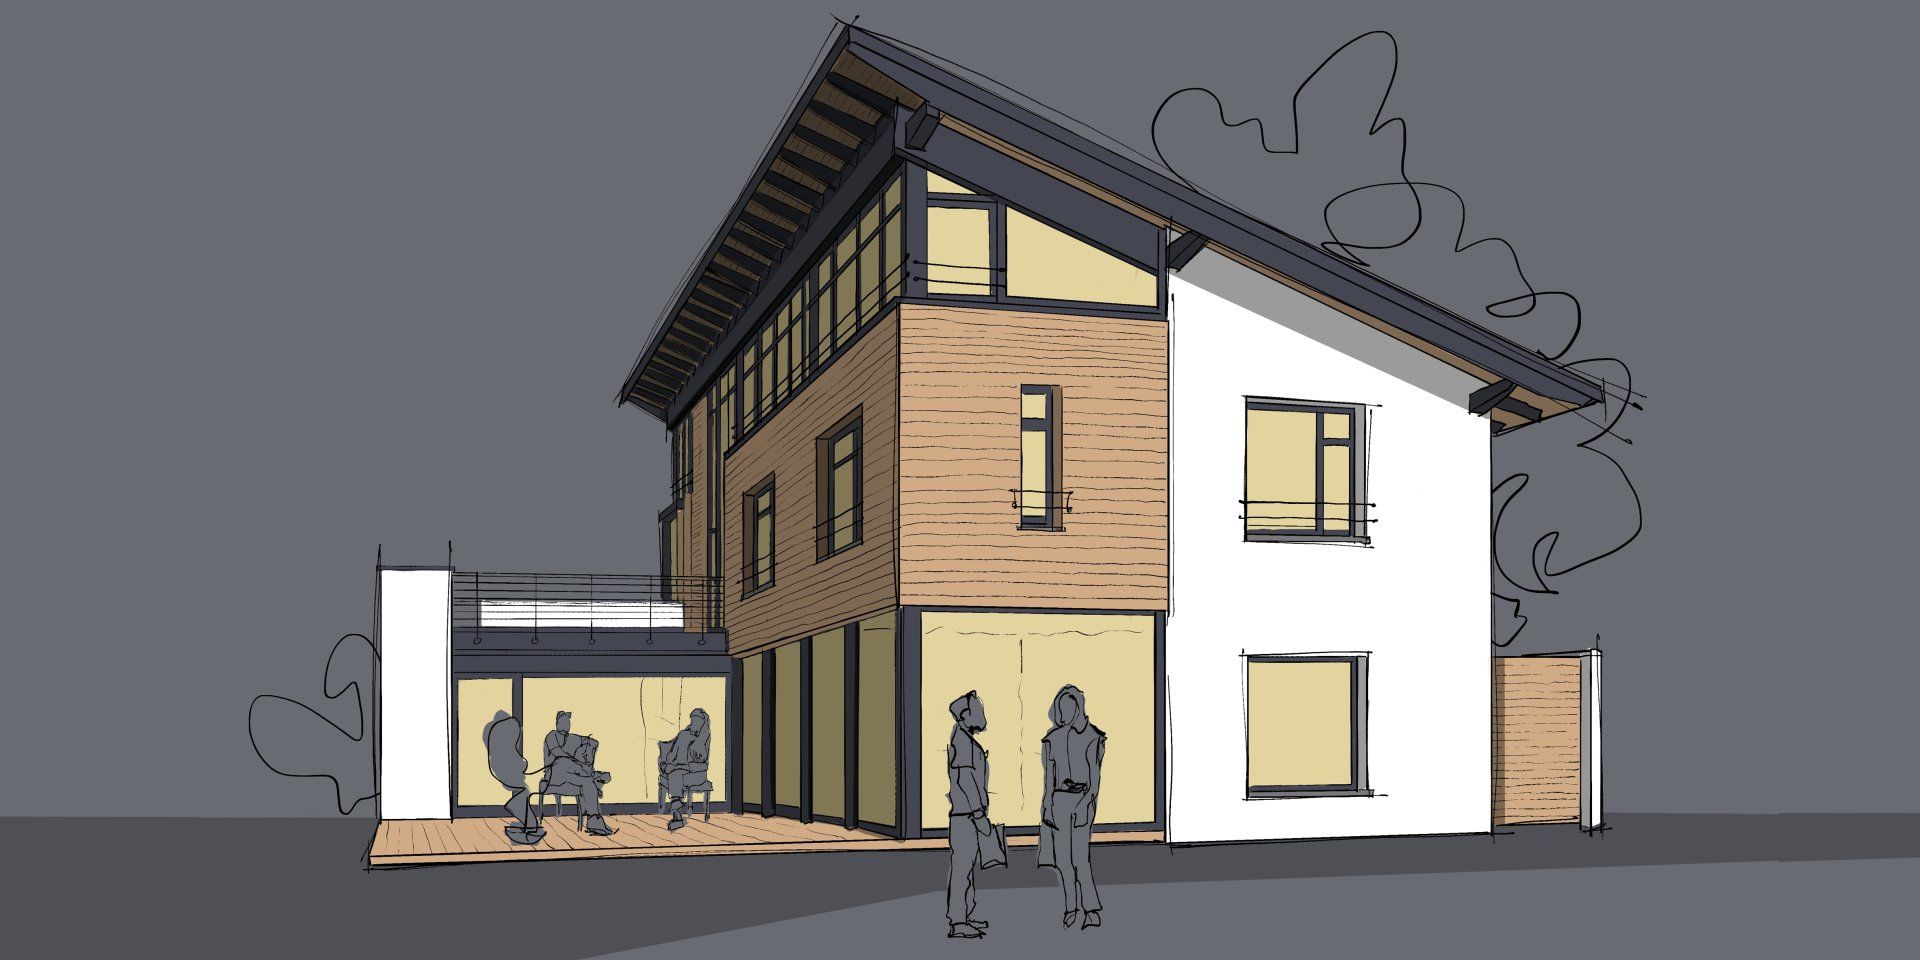 Projekt: Einfamilienhaus als Effizienshaus 40 plus